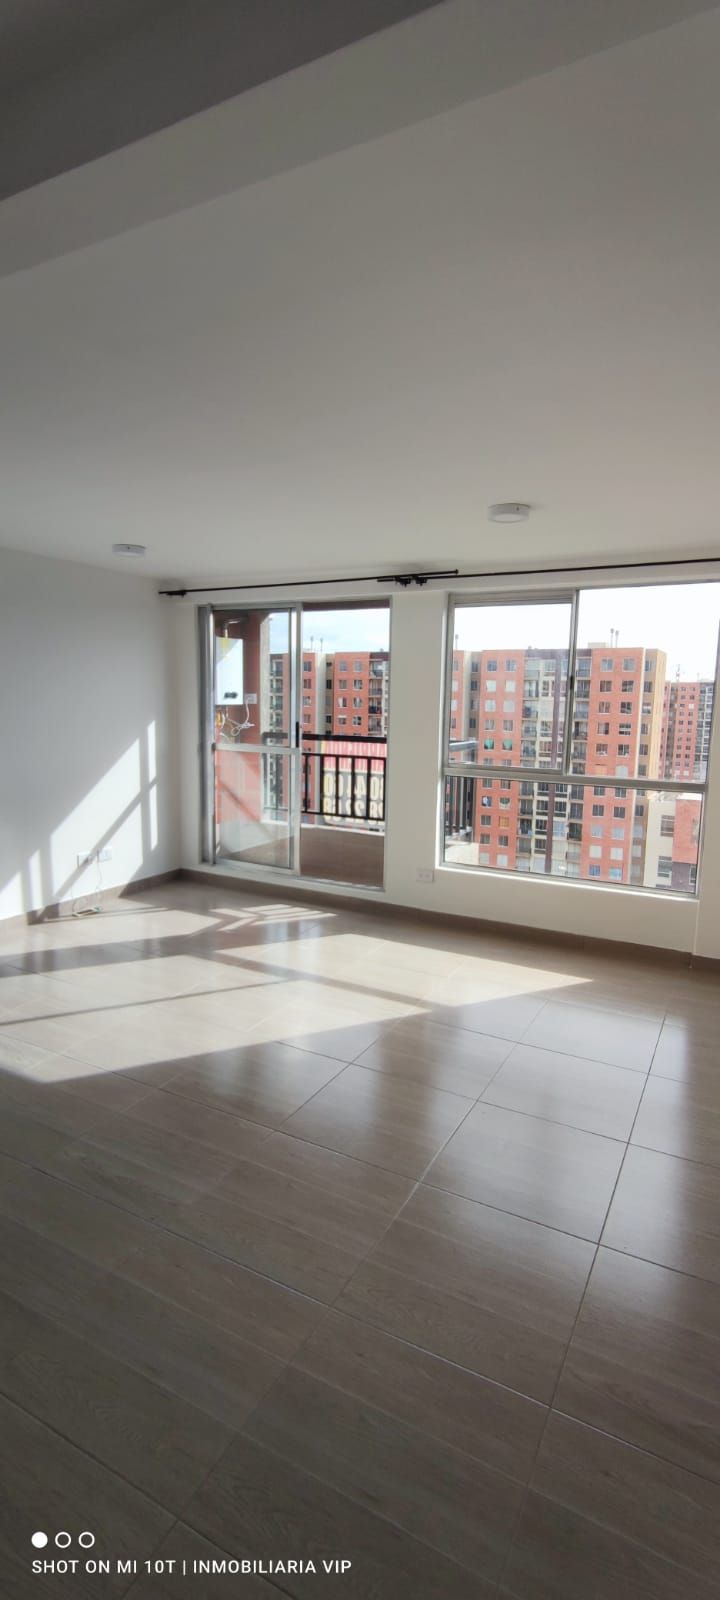 Apartamento en arriendo Madrid 56 m² - $ 950.000